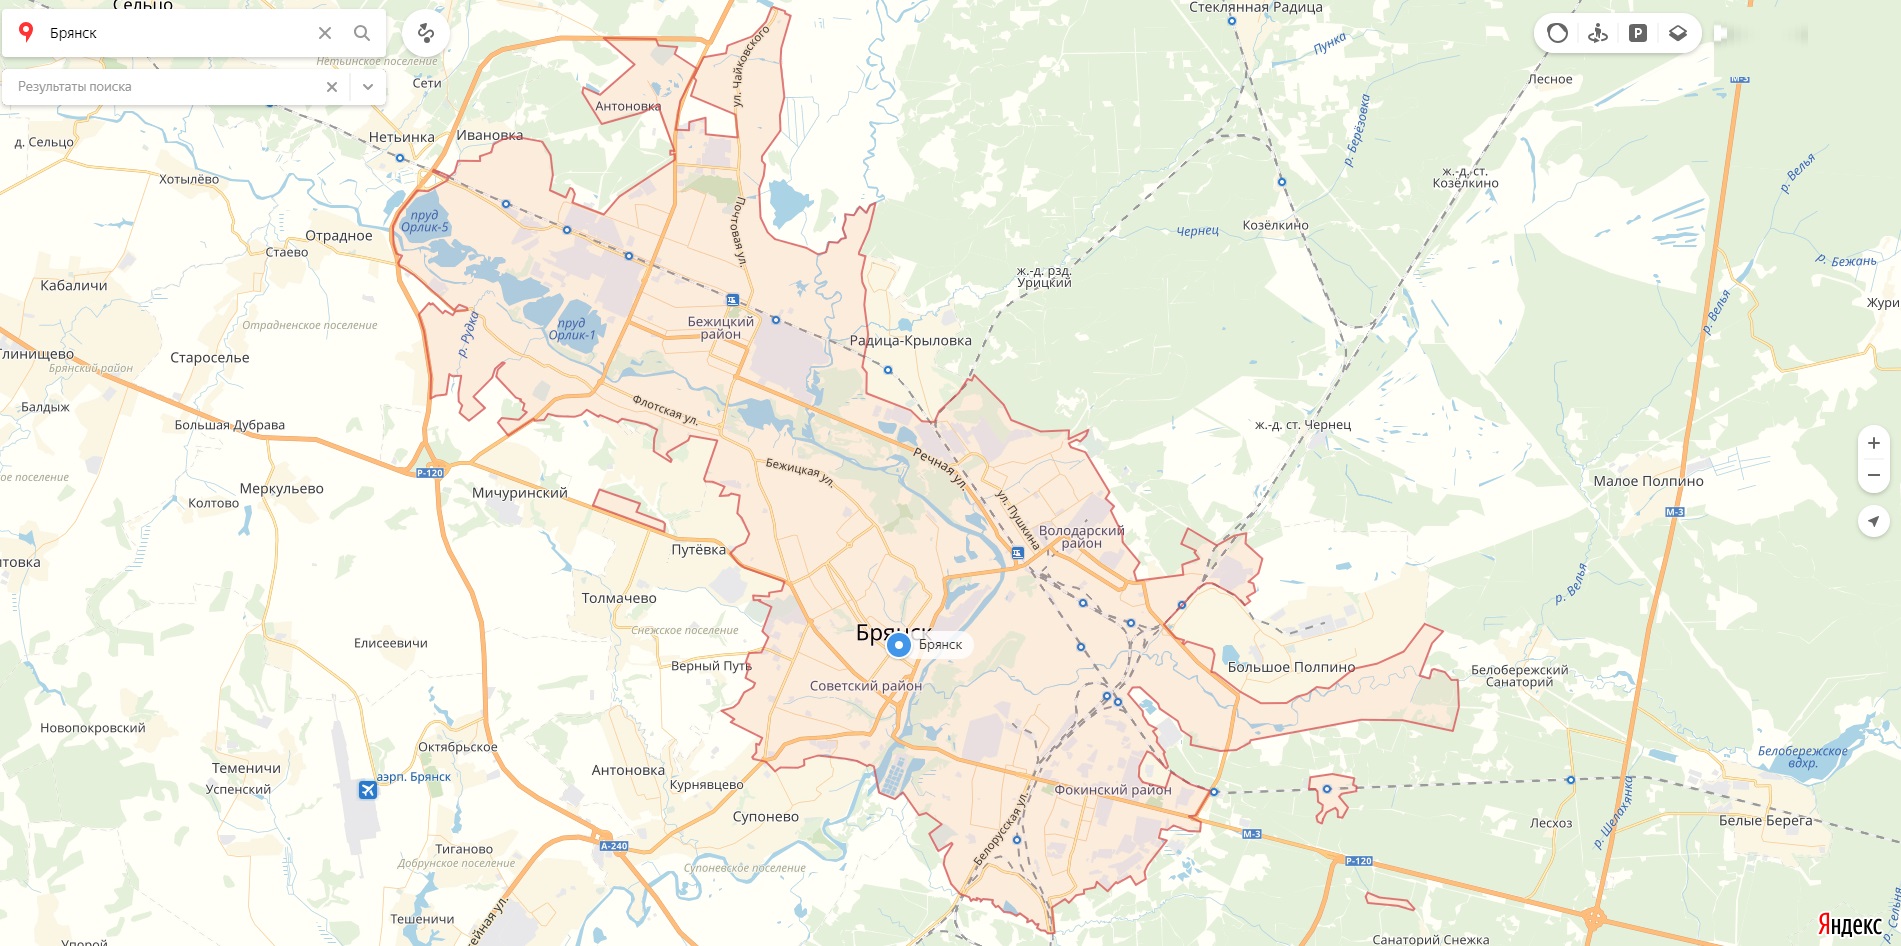 Дятьково карта города с улицами и домами